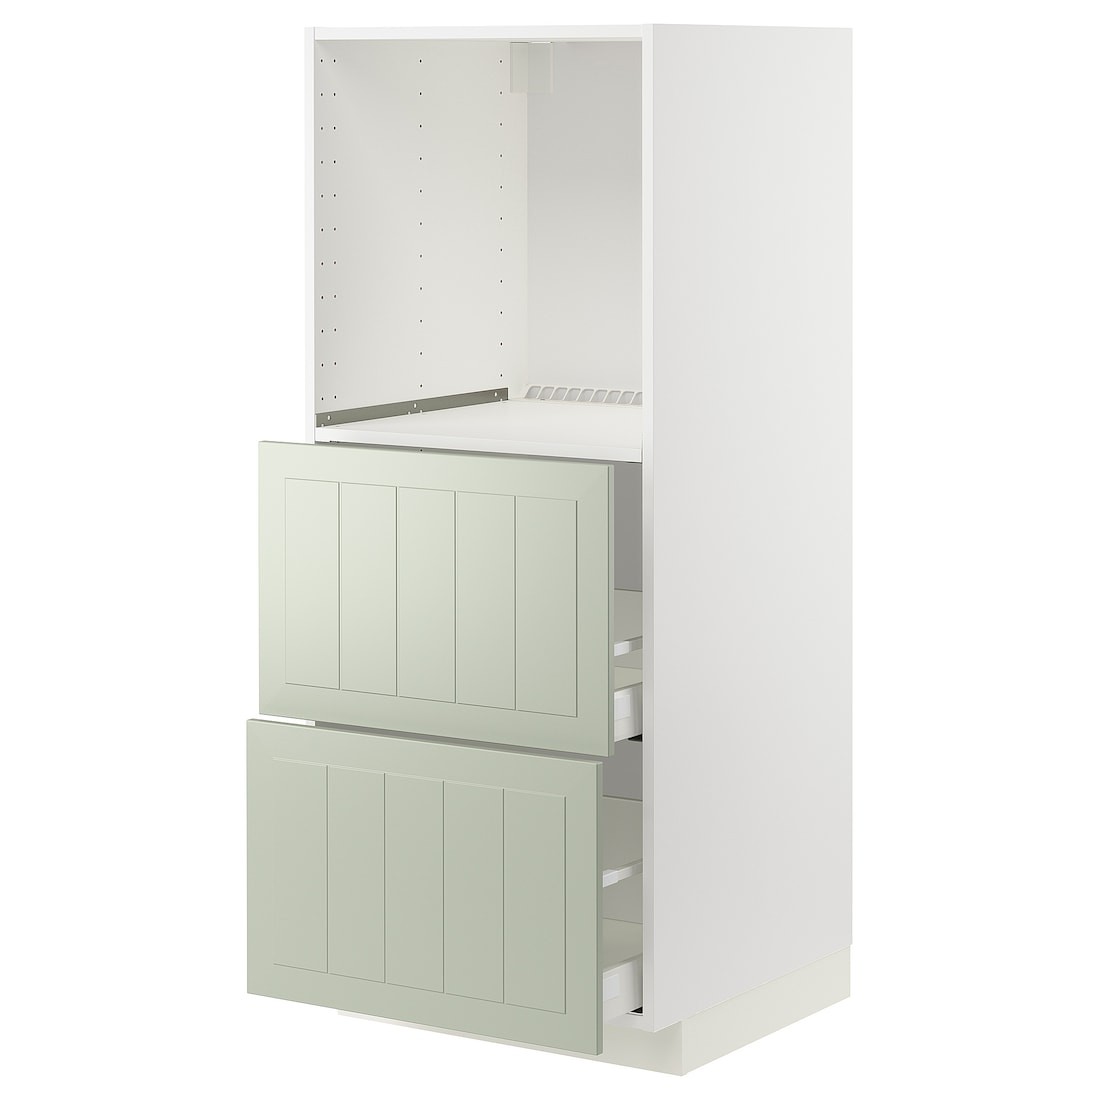 METOD МЕТОД / MAXIMERA МАКСИМЕРА Высокий шкаф с 2 ящиками для духовки, белый / Stensund светло-зеленый, 60x60x140 см